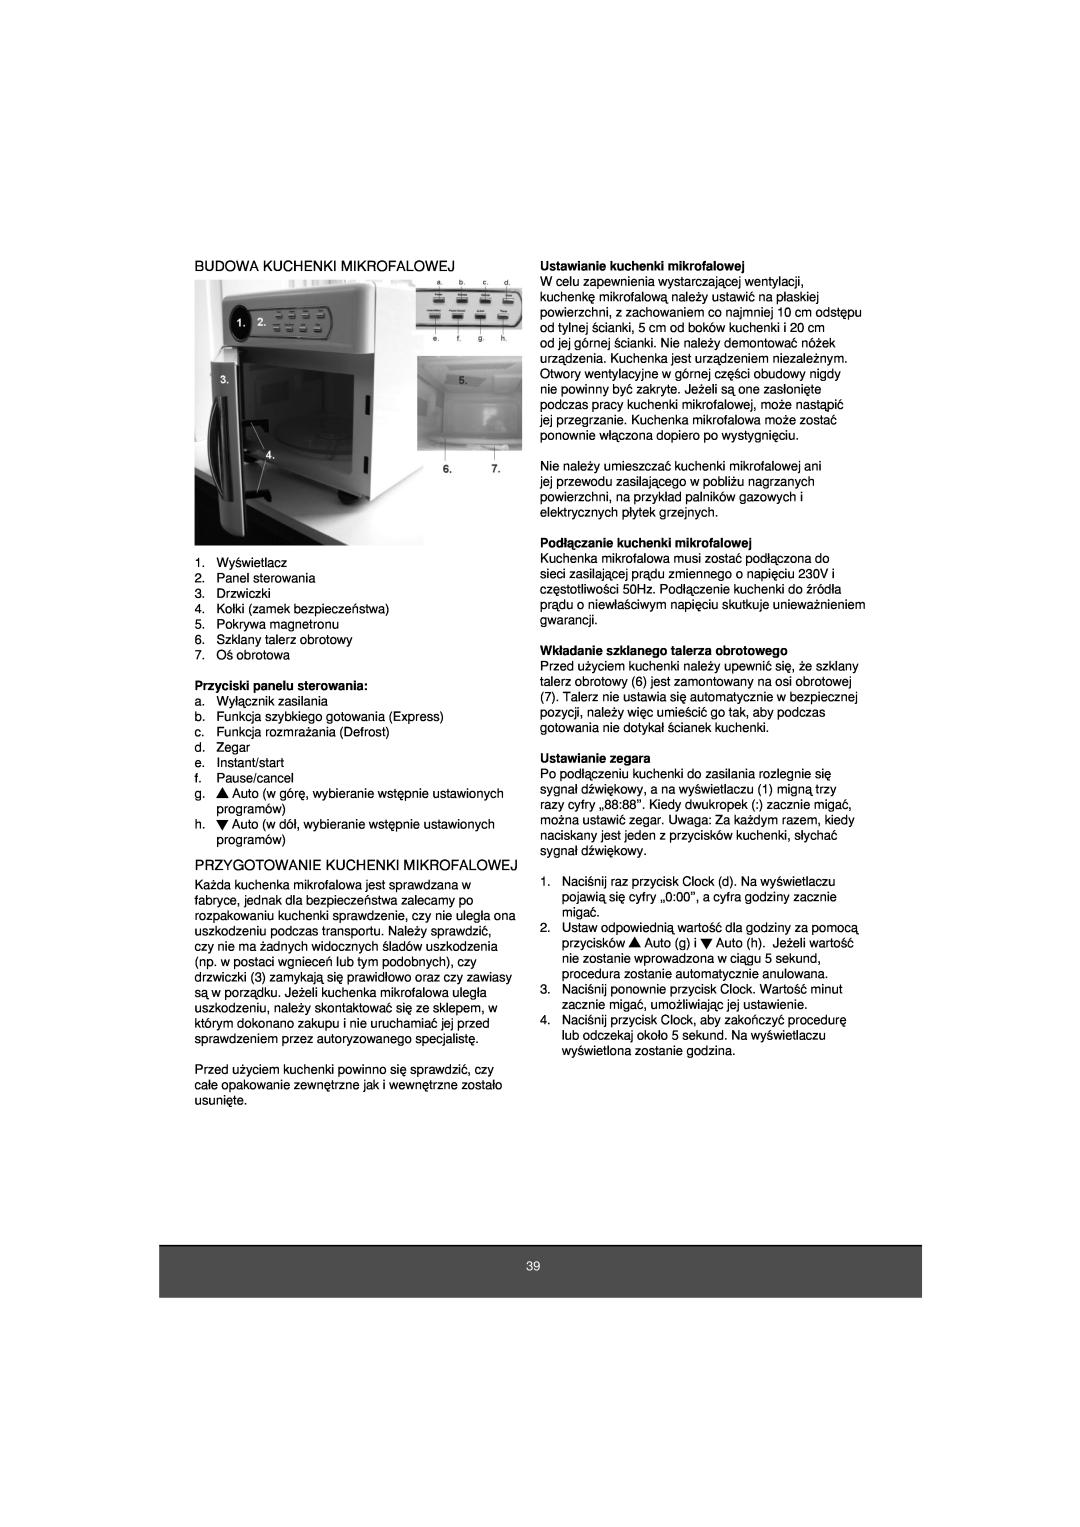 Melissa 653-081 manual Budowa Kuchenki Mikrofalowej, Przygotowanie Kuchenki Mikrofalowej, Przyciski panelu sterowania 